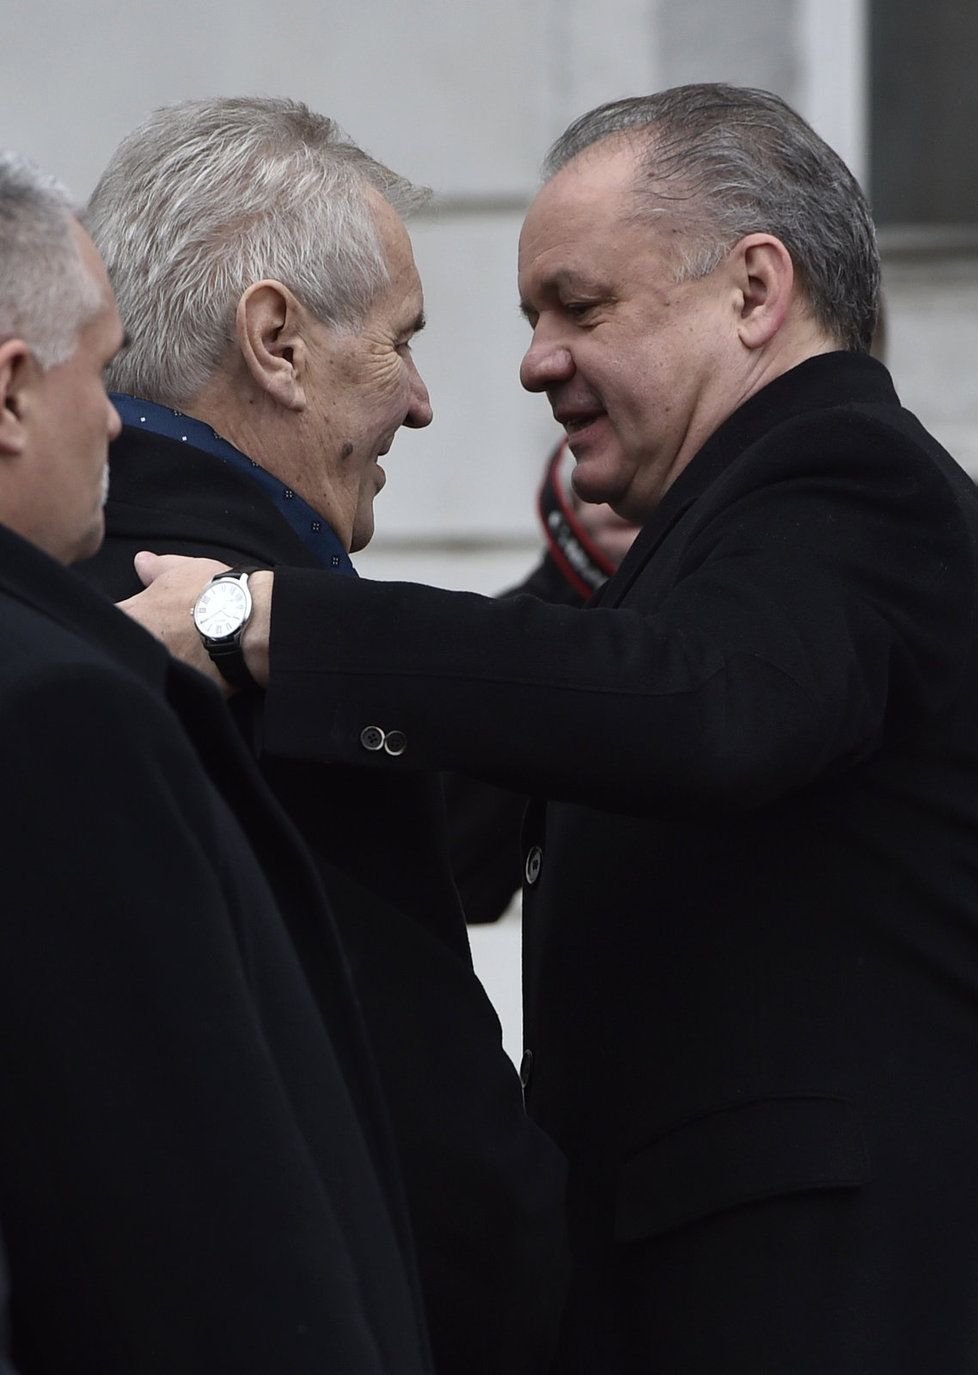 Prezident Miloš Zeman na své poslední státní cestě ve stávajícím funkčním období na Slovensku.